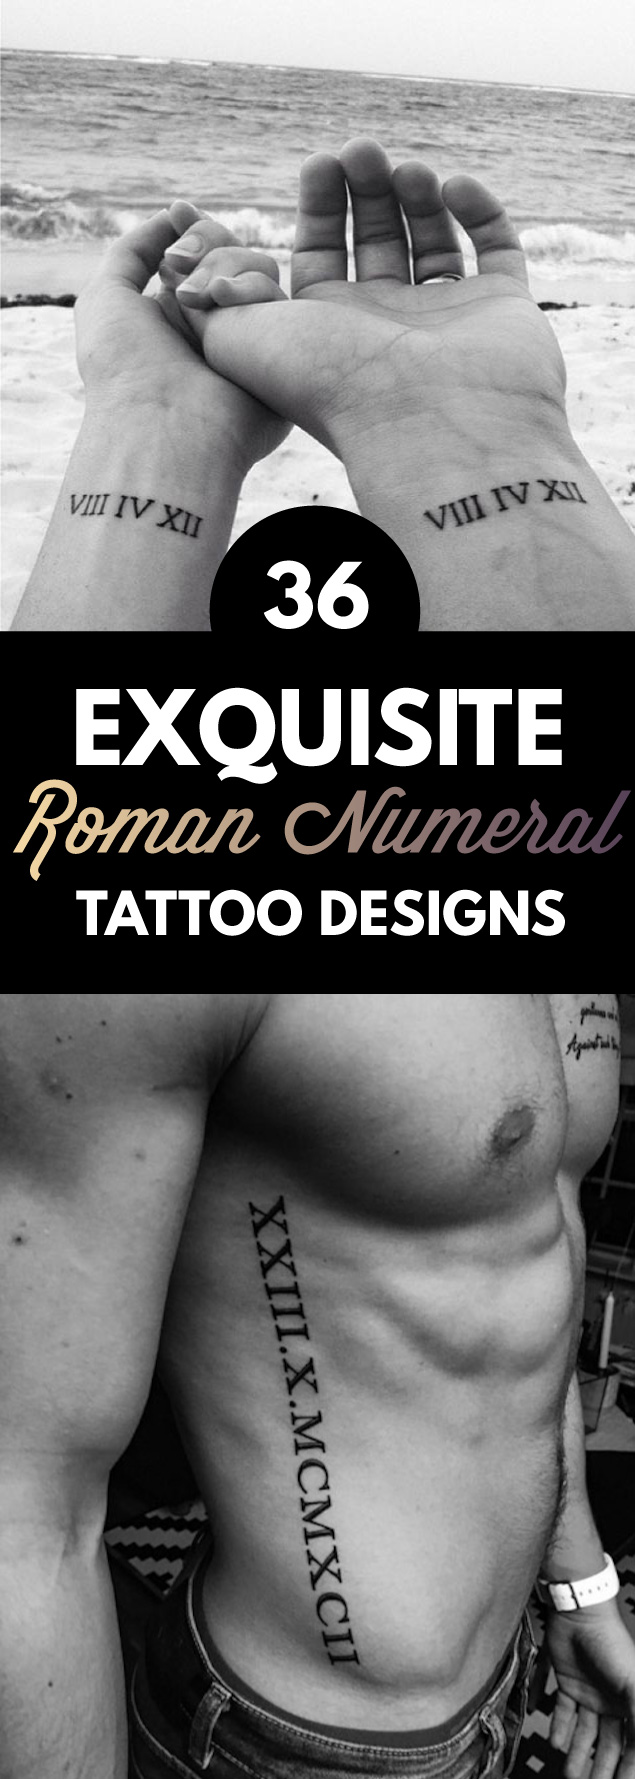 36 Exquisite Roman Numeral Tattoos Designs 